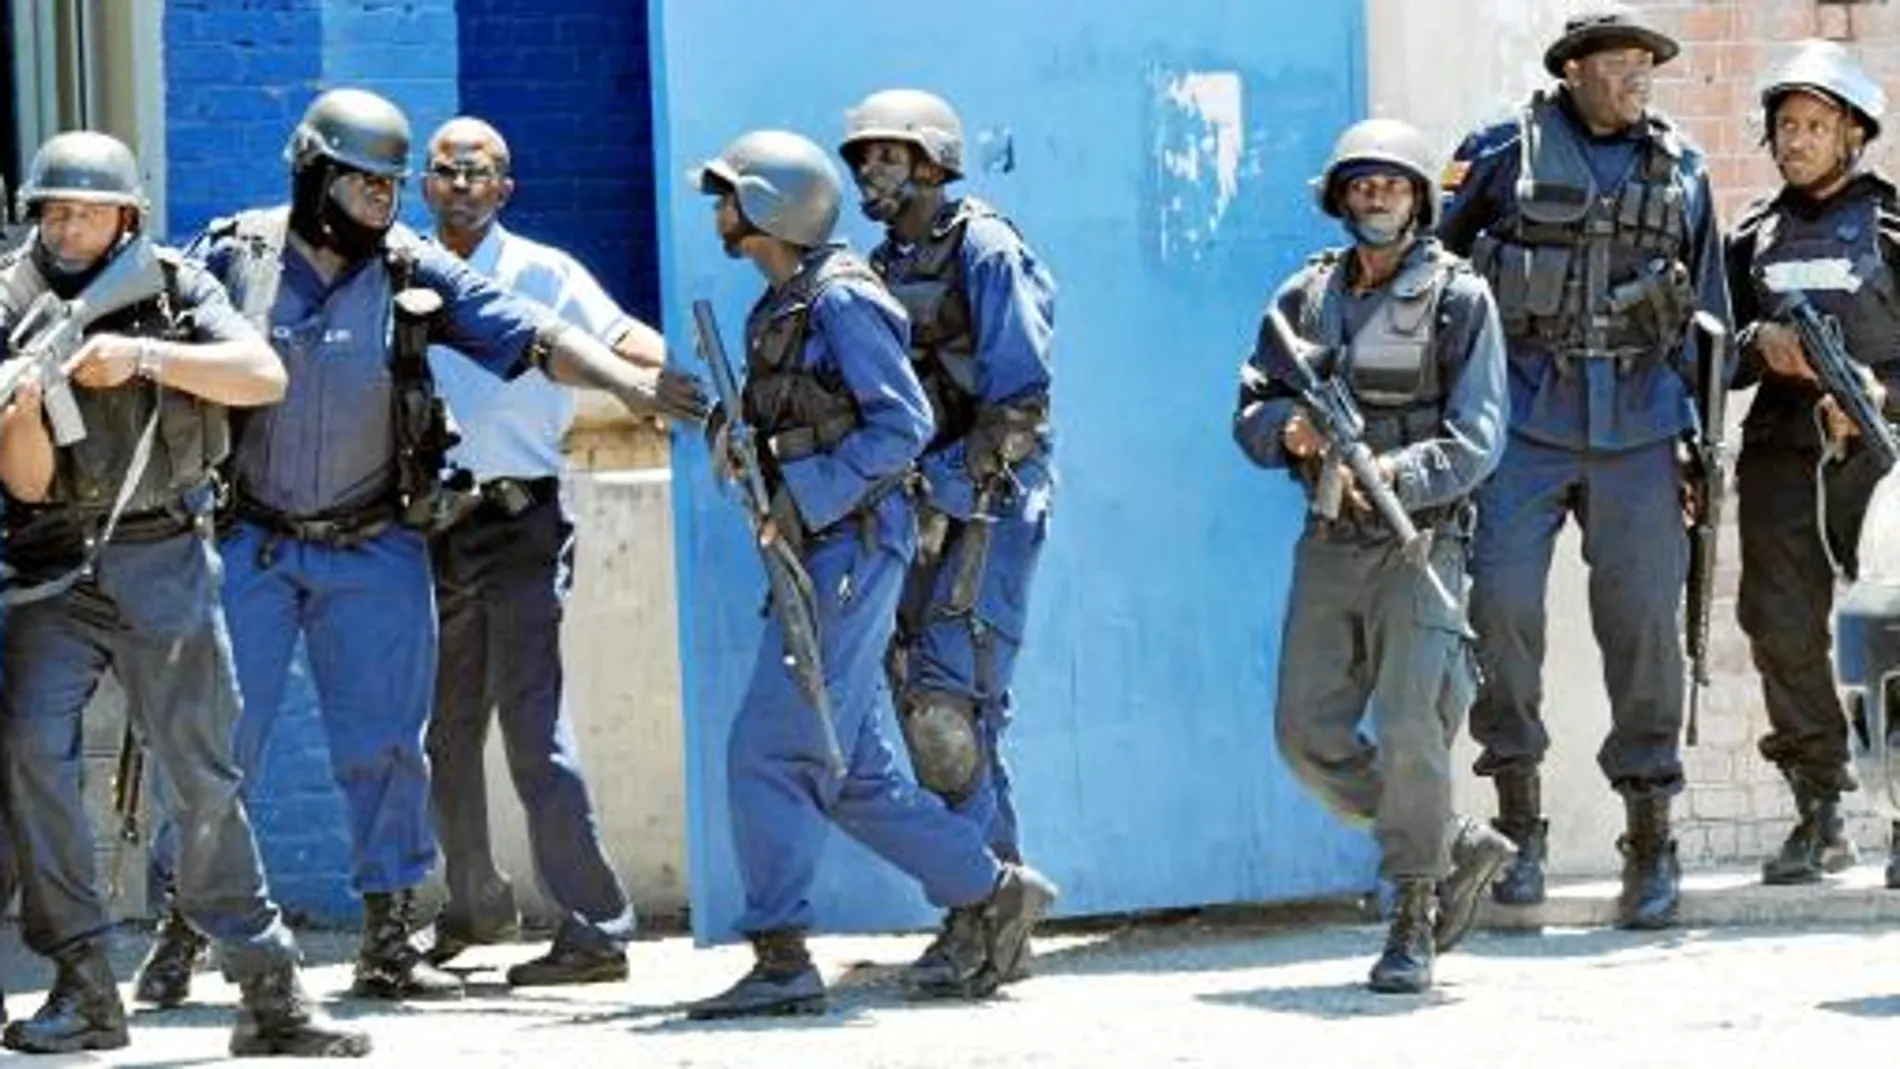 Policías y soldados, armados con rifles, merodean la conflictiva zona de Tivoli Gardens buscando a Coke